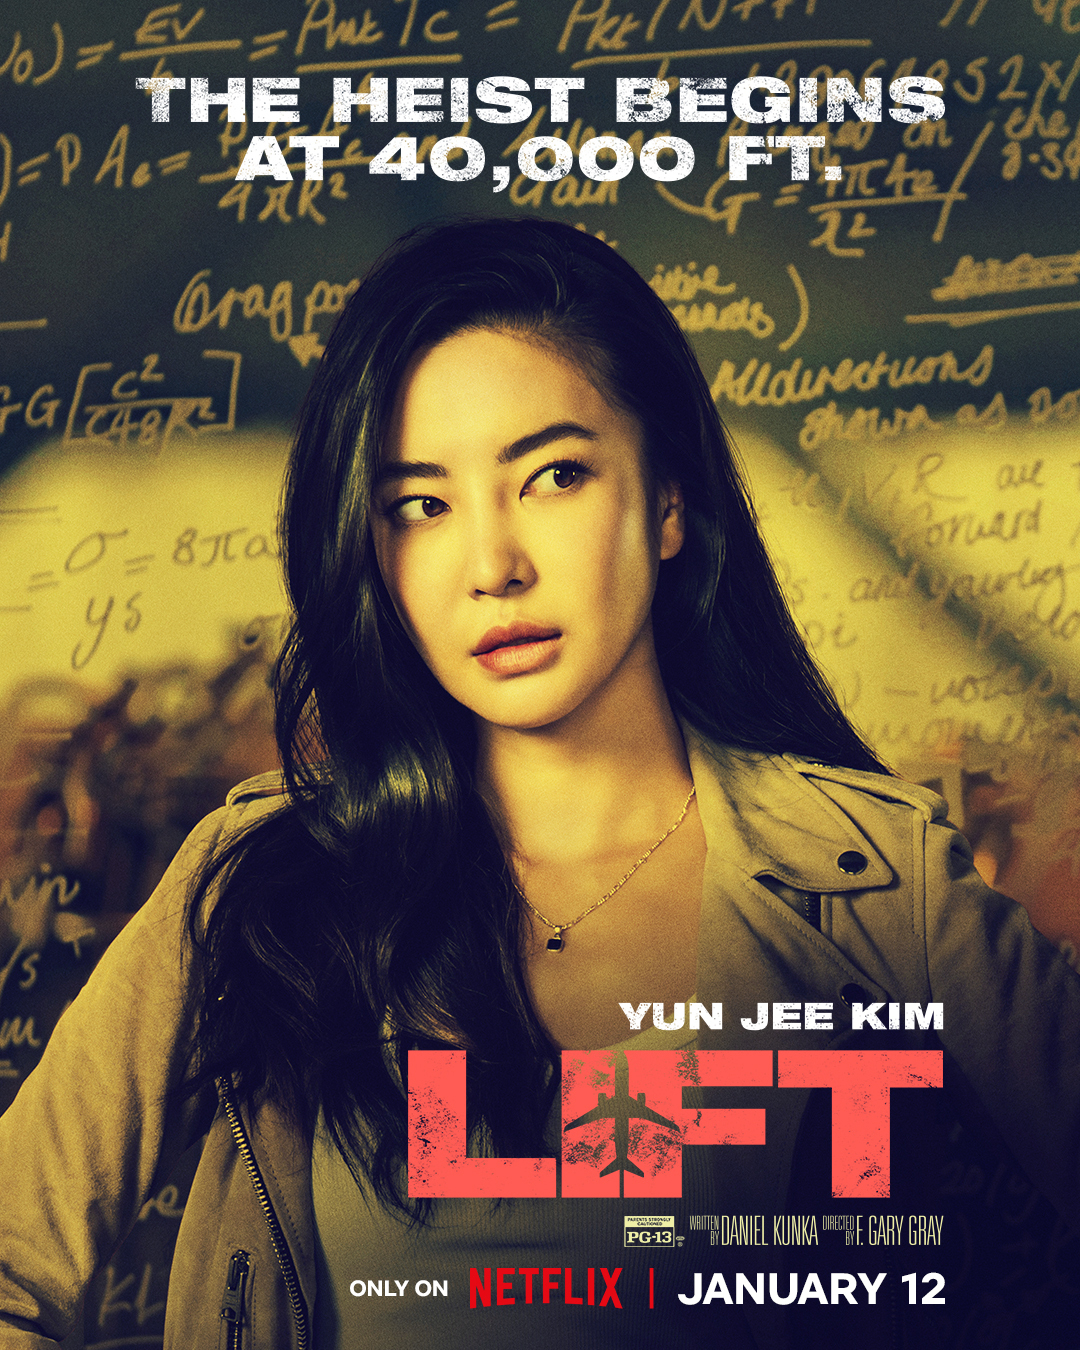 Kim Yun-jee in “Lift” (Netflix)